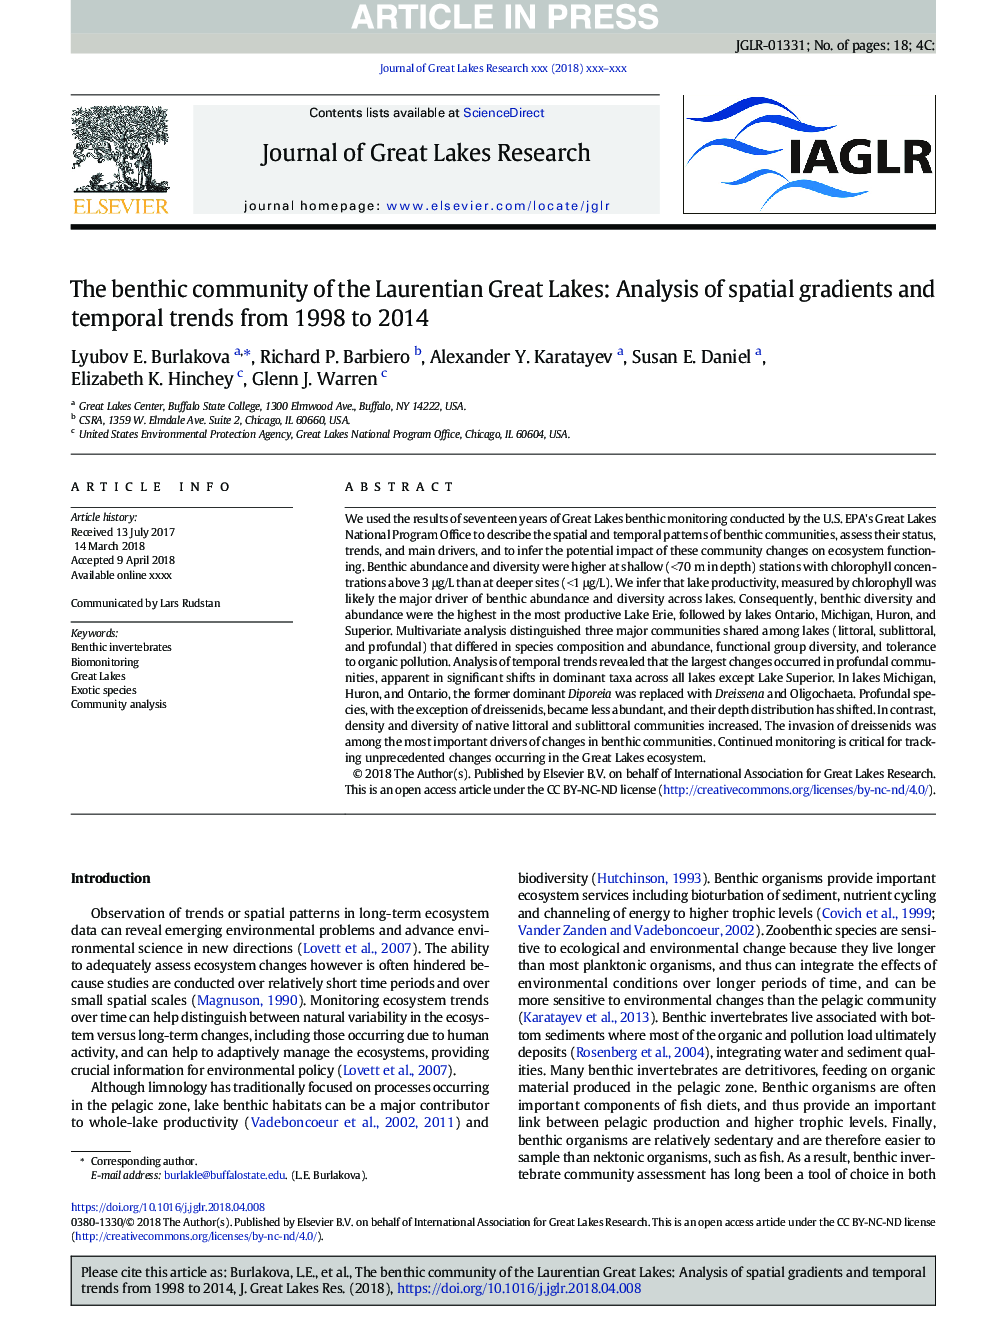 جامعه بنیادی دریاچه های بزرگ لورانتی: تجزیه و تحلیل شیب های فضایی و روند های زمانی از 1998 تا 2014 